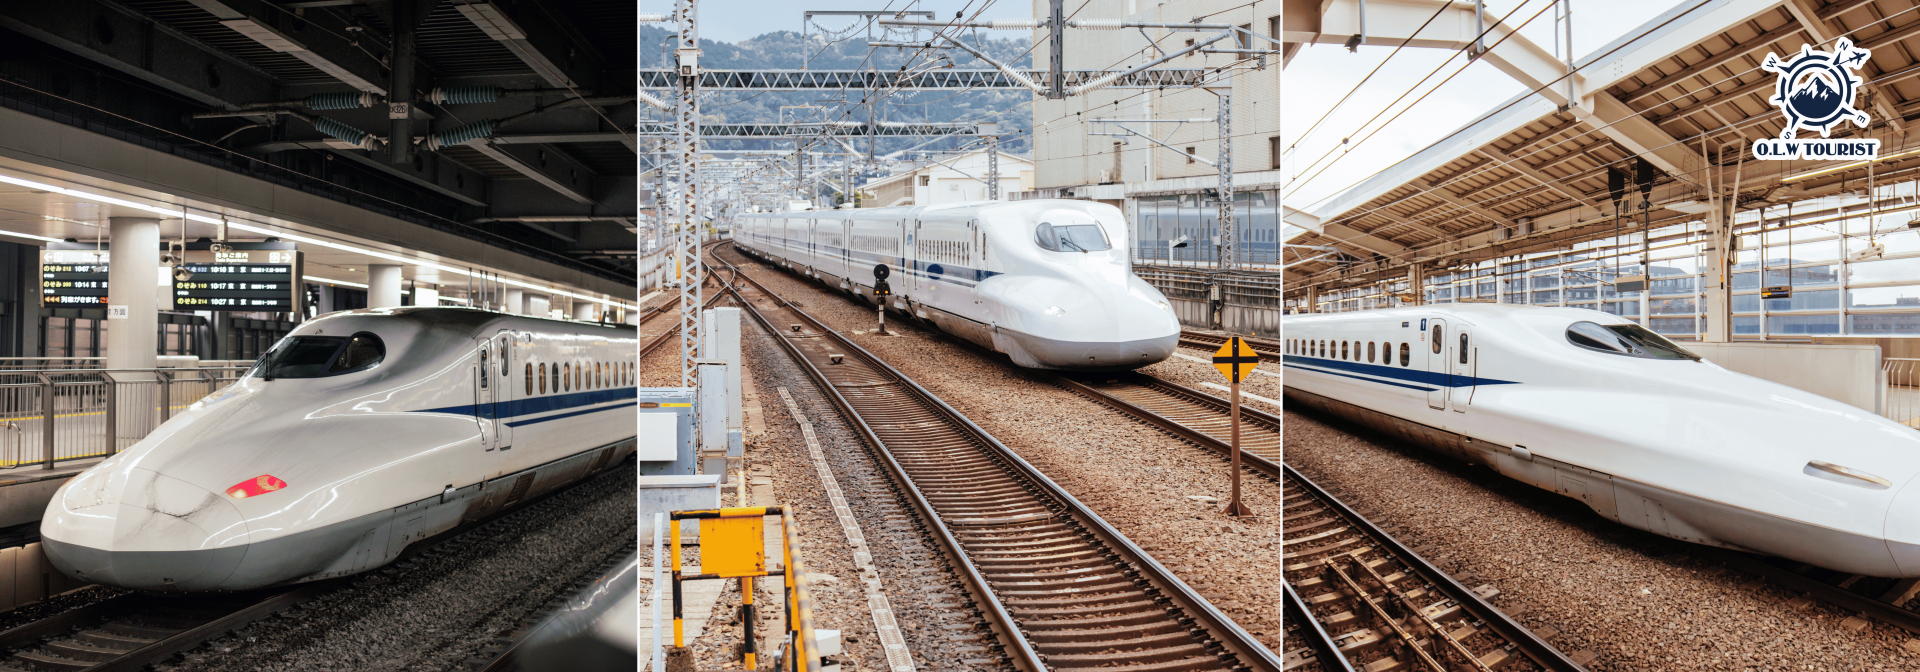 Tau-sieu-toc-Shinkansen